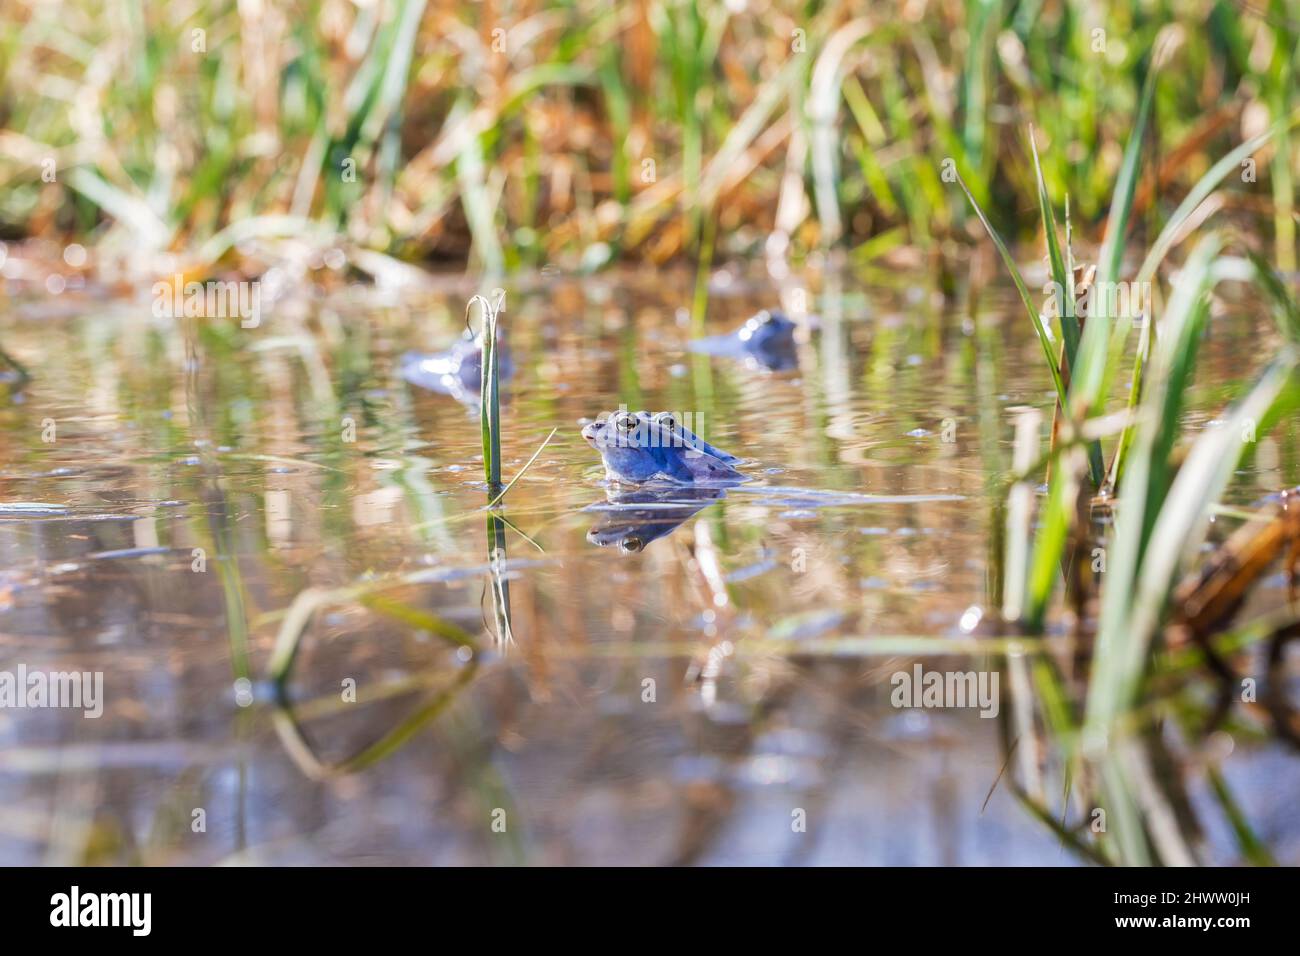 Blue Frog - Rana arvalis in acqua al momento dell'accoppiamento. Foto selvaggia dalla natura. La foto ha un bel bokeh. Foto Stock